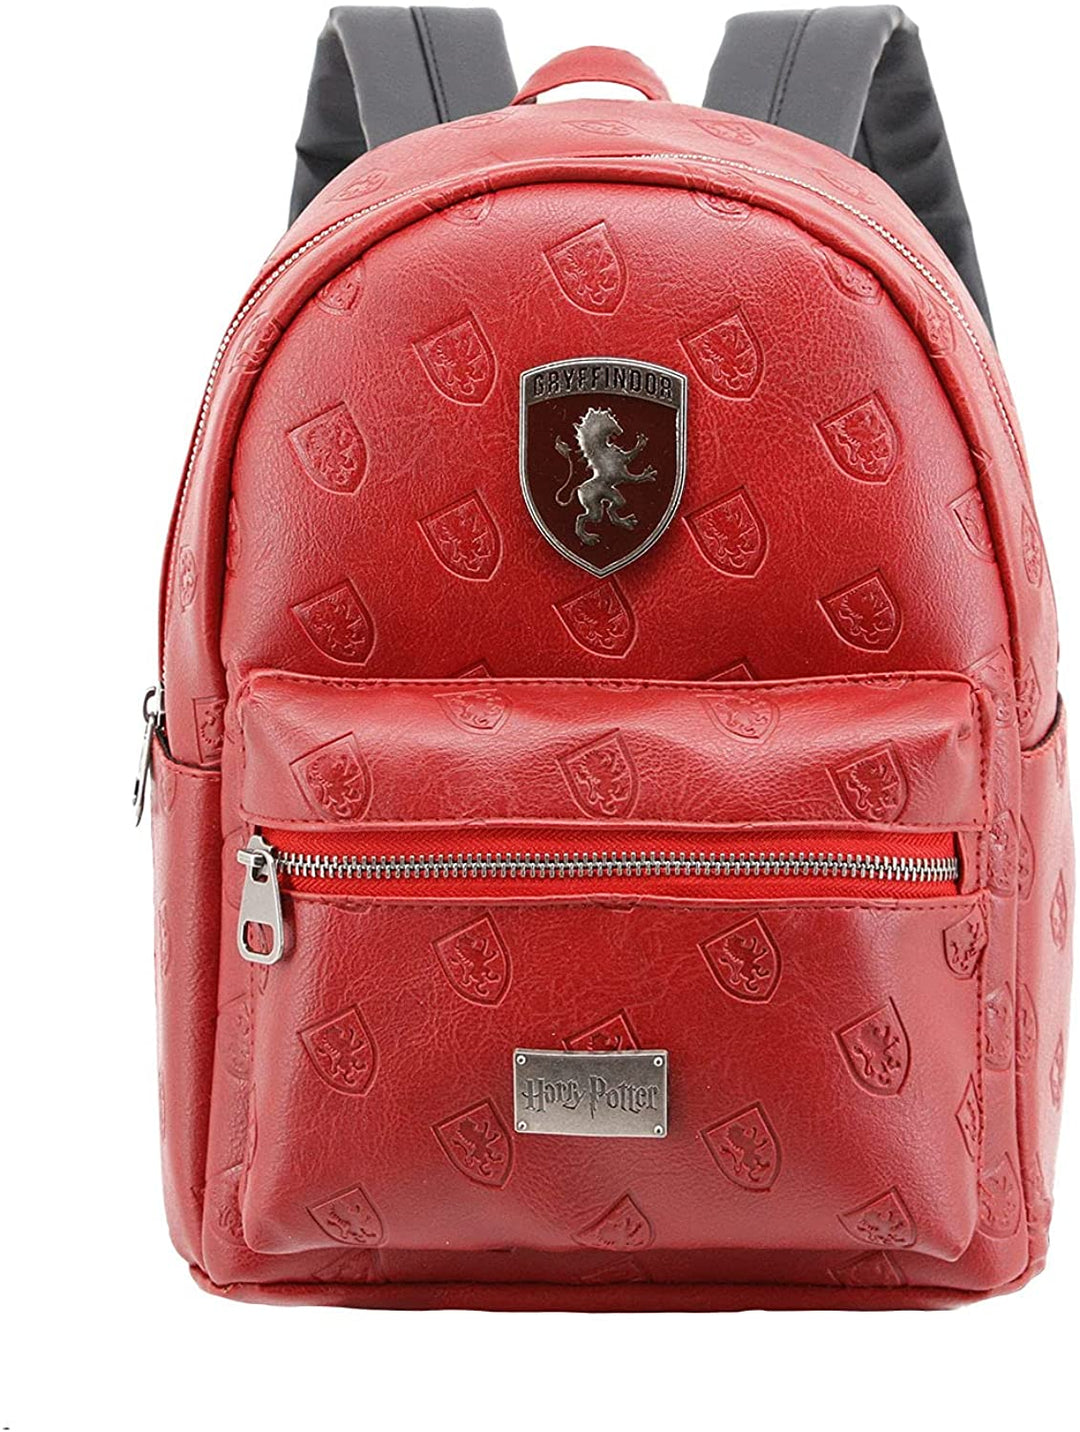 Harry Potter Emblem-Fashion Backpack, Burgundy